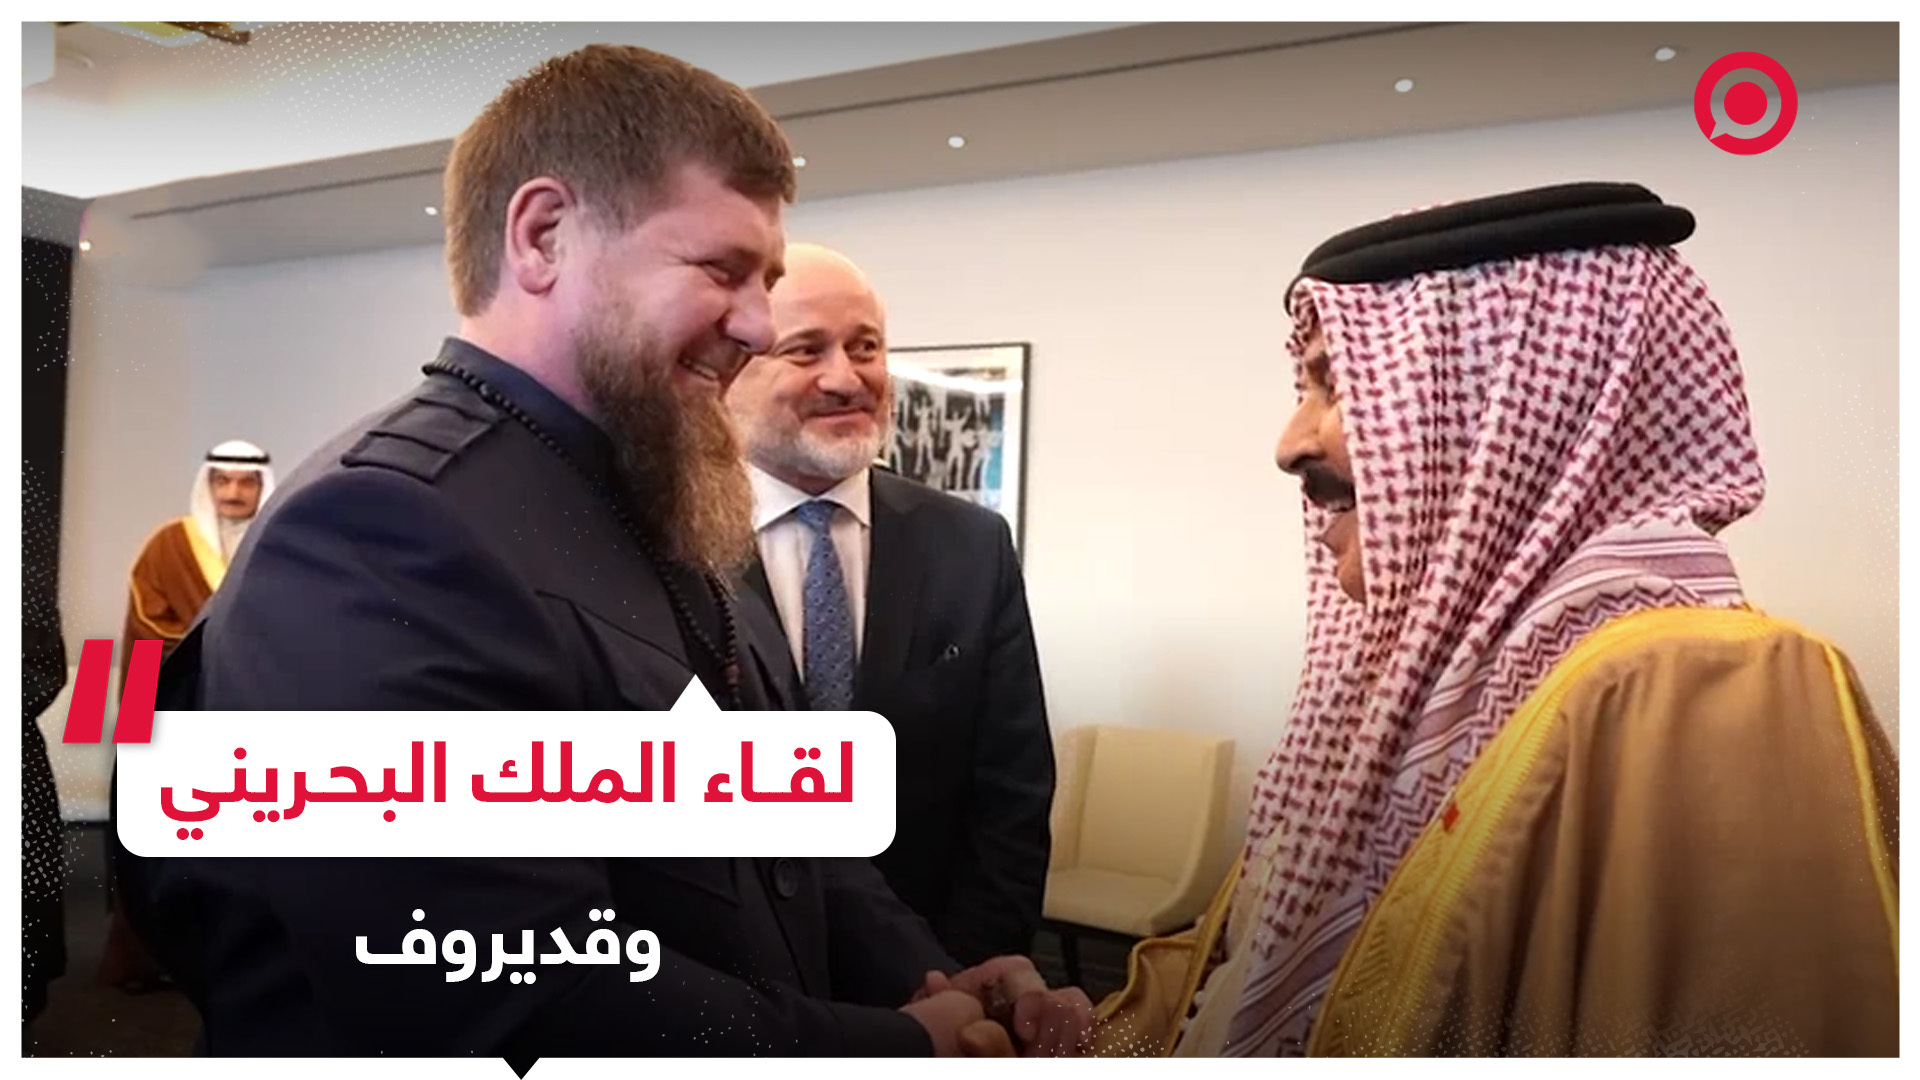 ملك البحرين حمد بن عيسى آل خليفة يستقبل في مقر إقامته بموسكو الرئيس الشيشاني رمضان قديروف